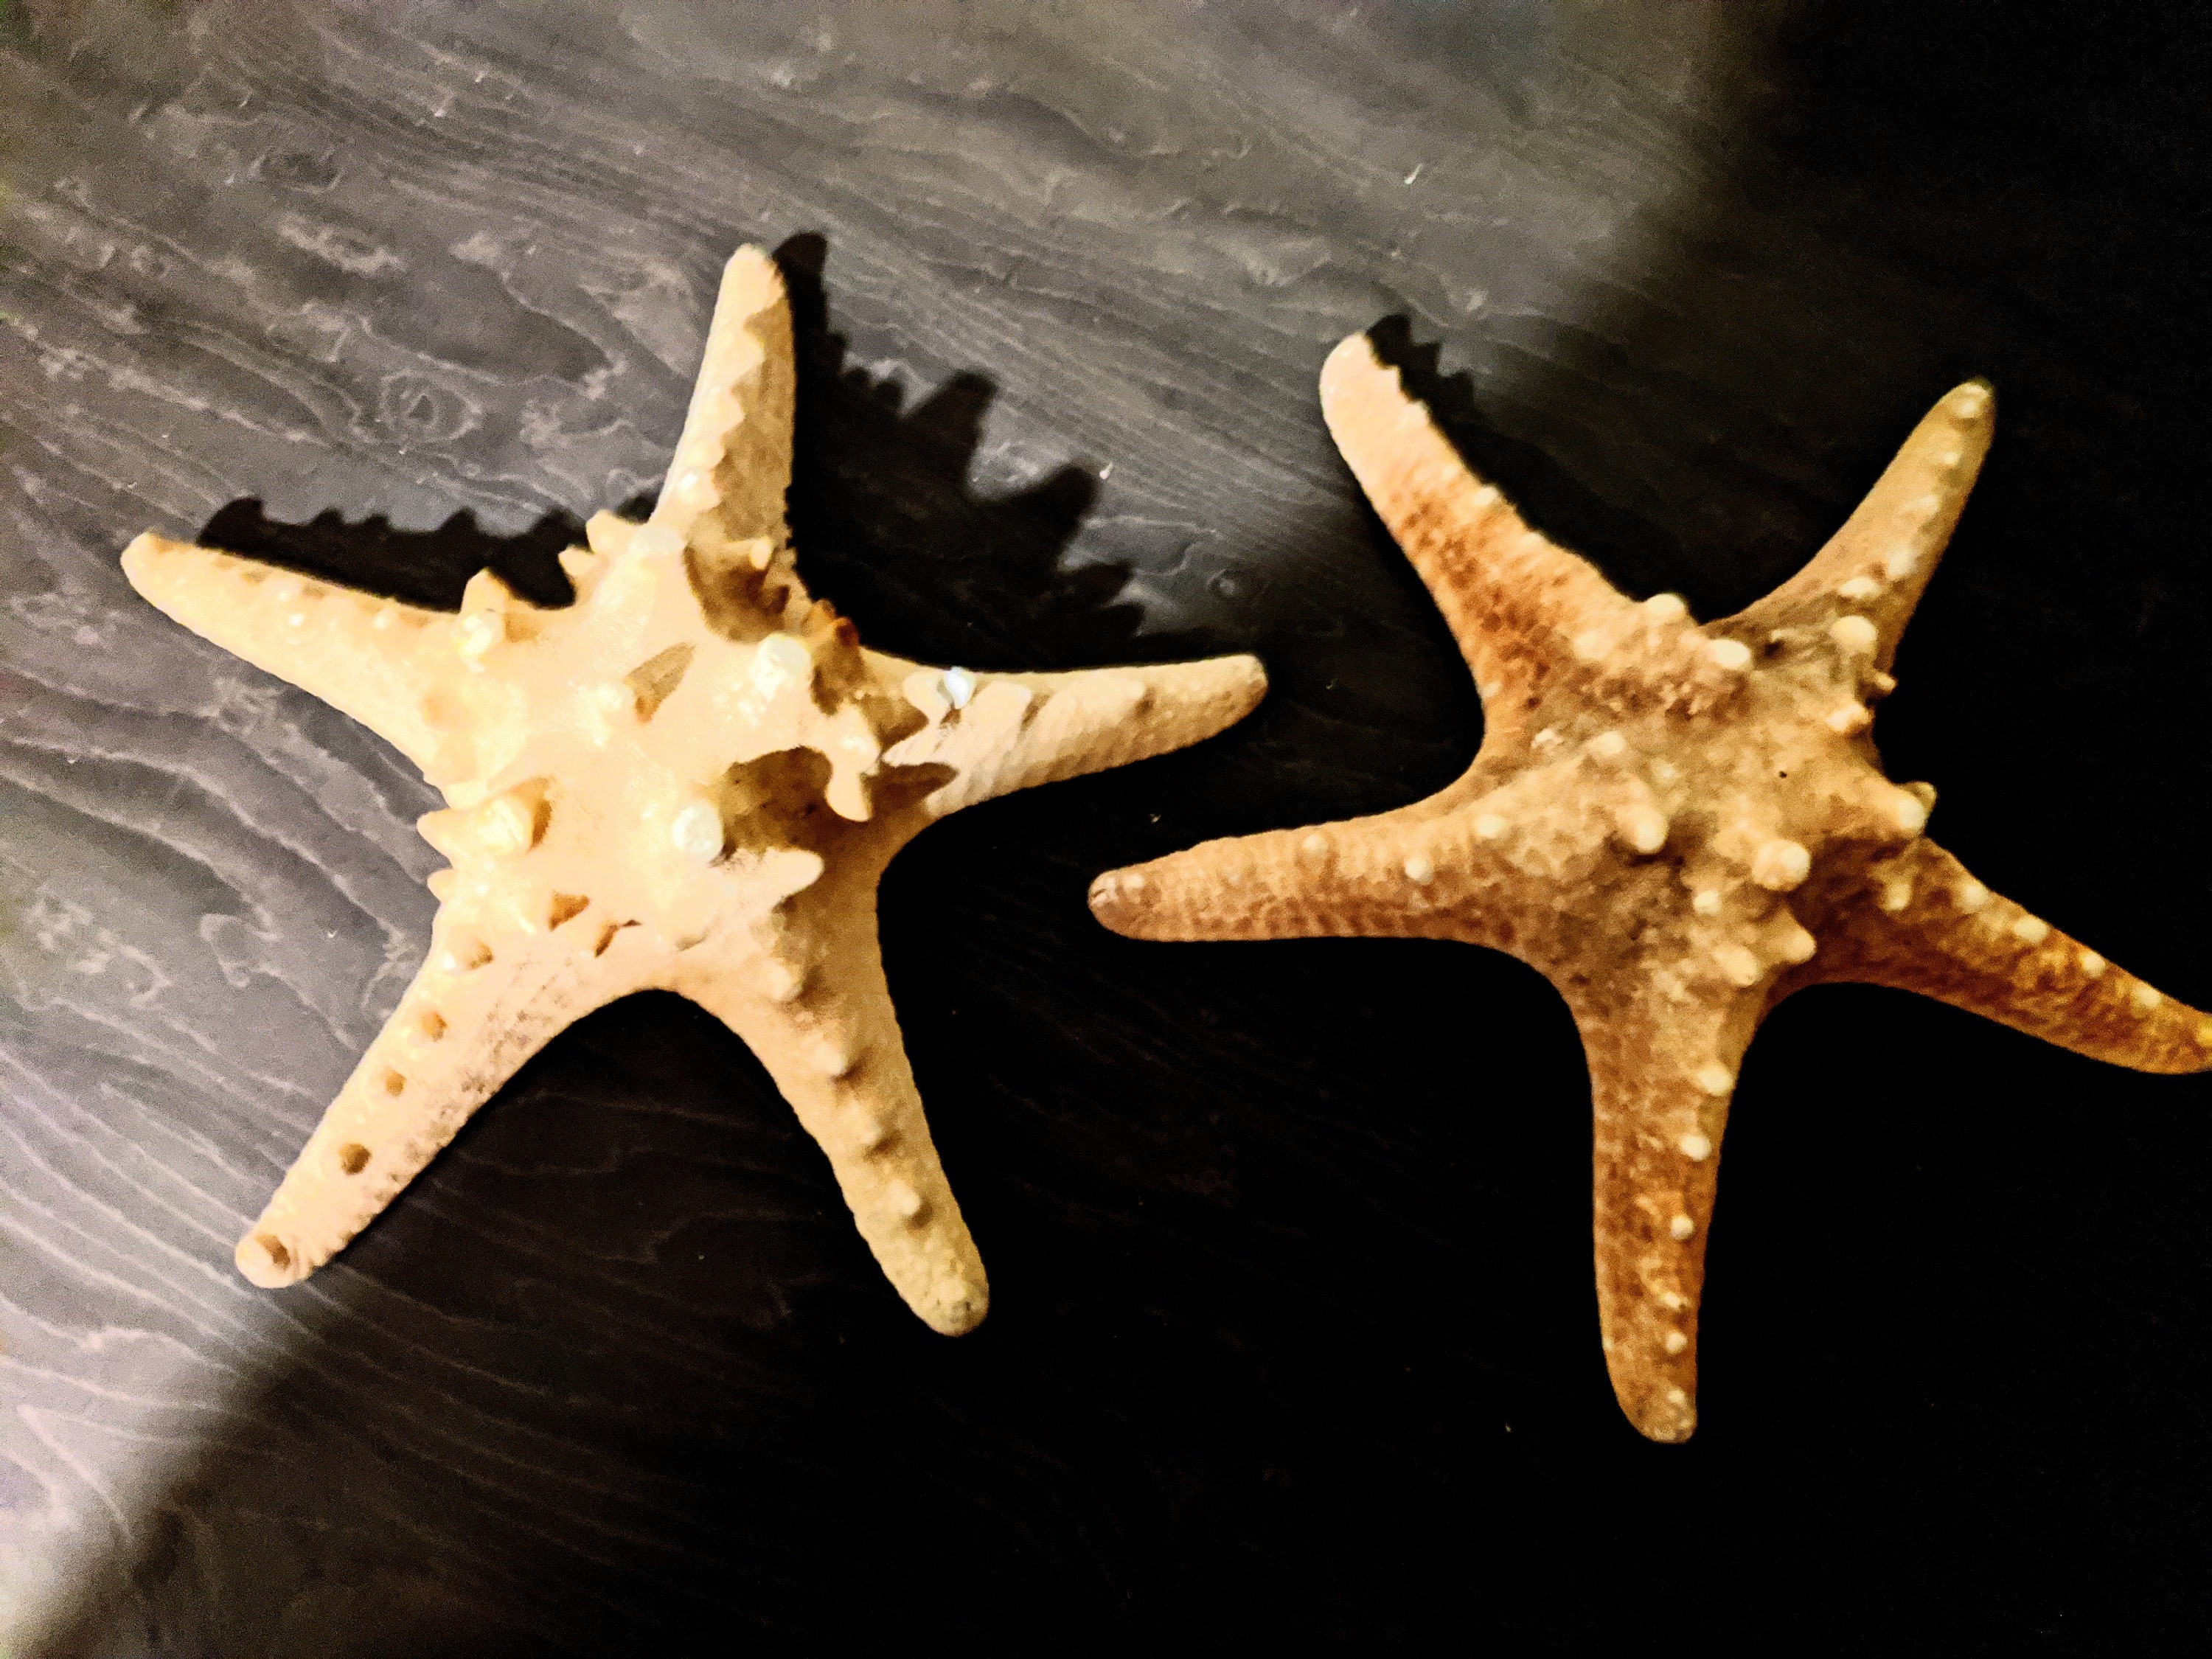 Starfish, Huge Starfish, Big Starfish, Sea Starfish, Ocean Starfish,  Enormous Starfish, Unique Star Fish, Sea Treasure, Ocean Collection 